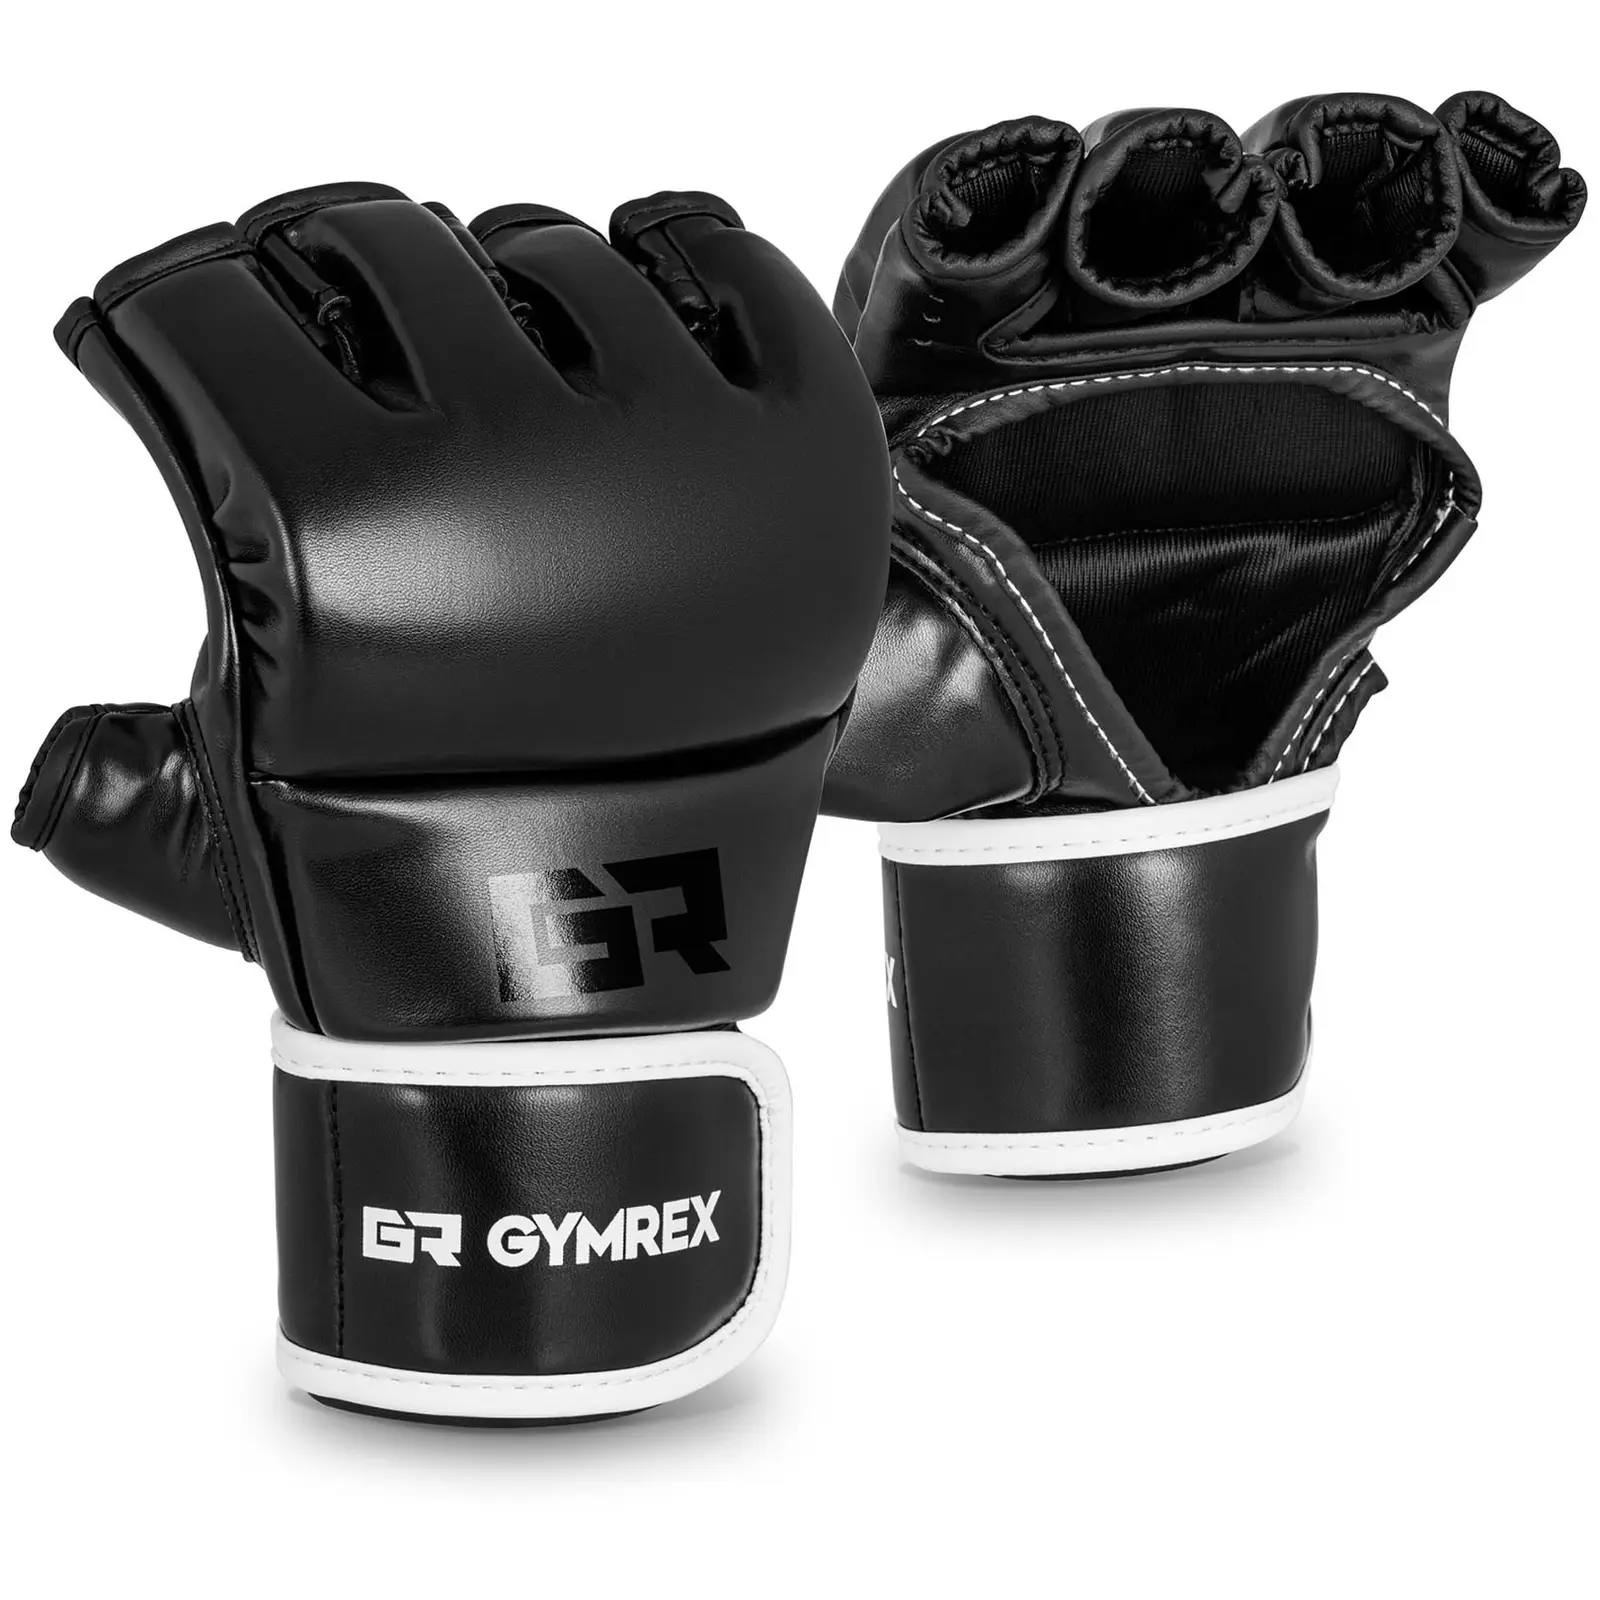 MMA rukavice - vel. L/XL - černé